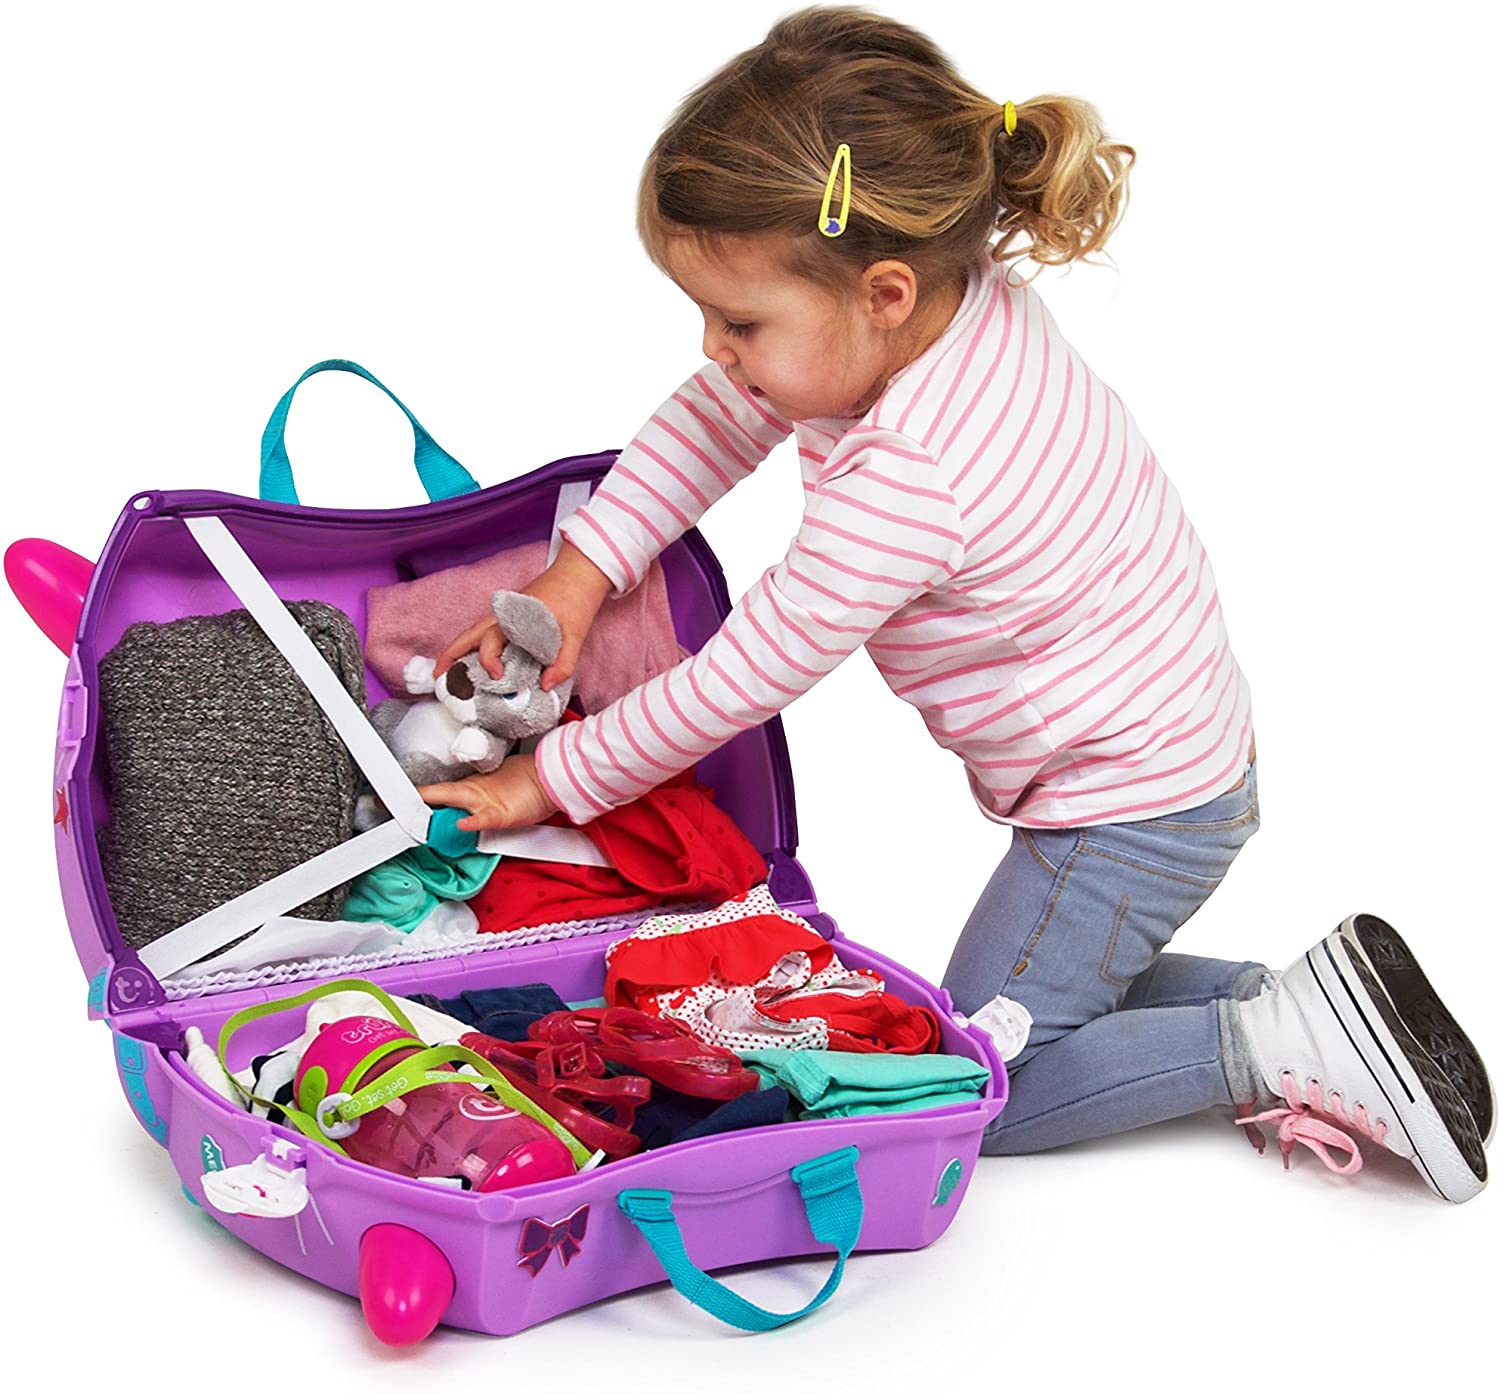 Про купить игрушку. Trunki чемодан сиреневый. Чемодан Trunki розовый. Trunki чемодан на колесиках котенок Кэйзи. Чемодан Trunki детский фиолетовый.